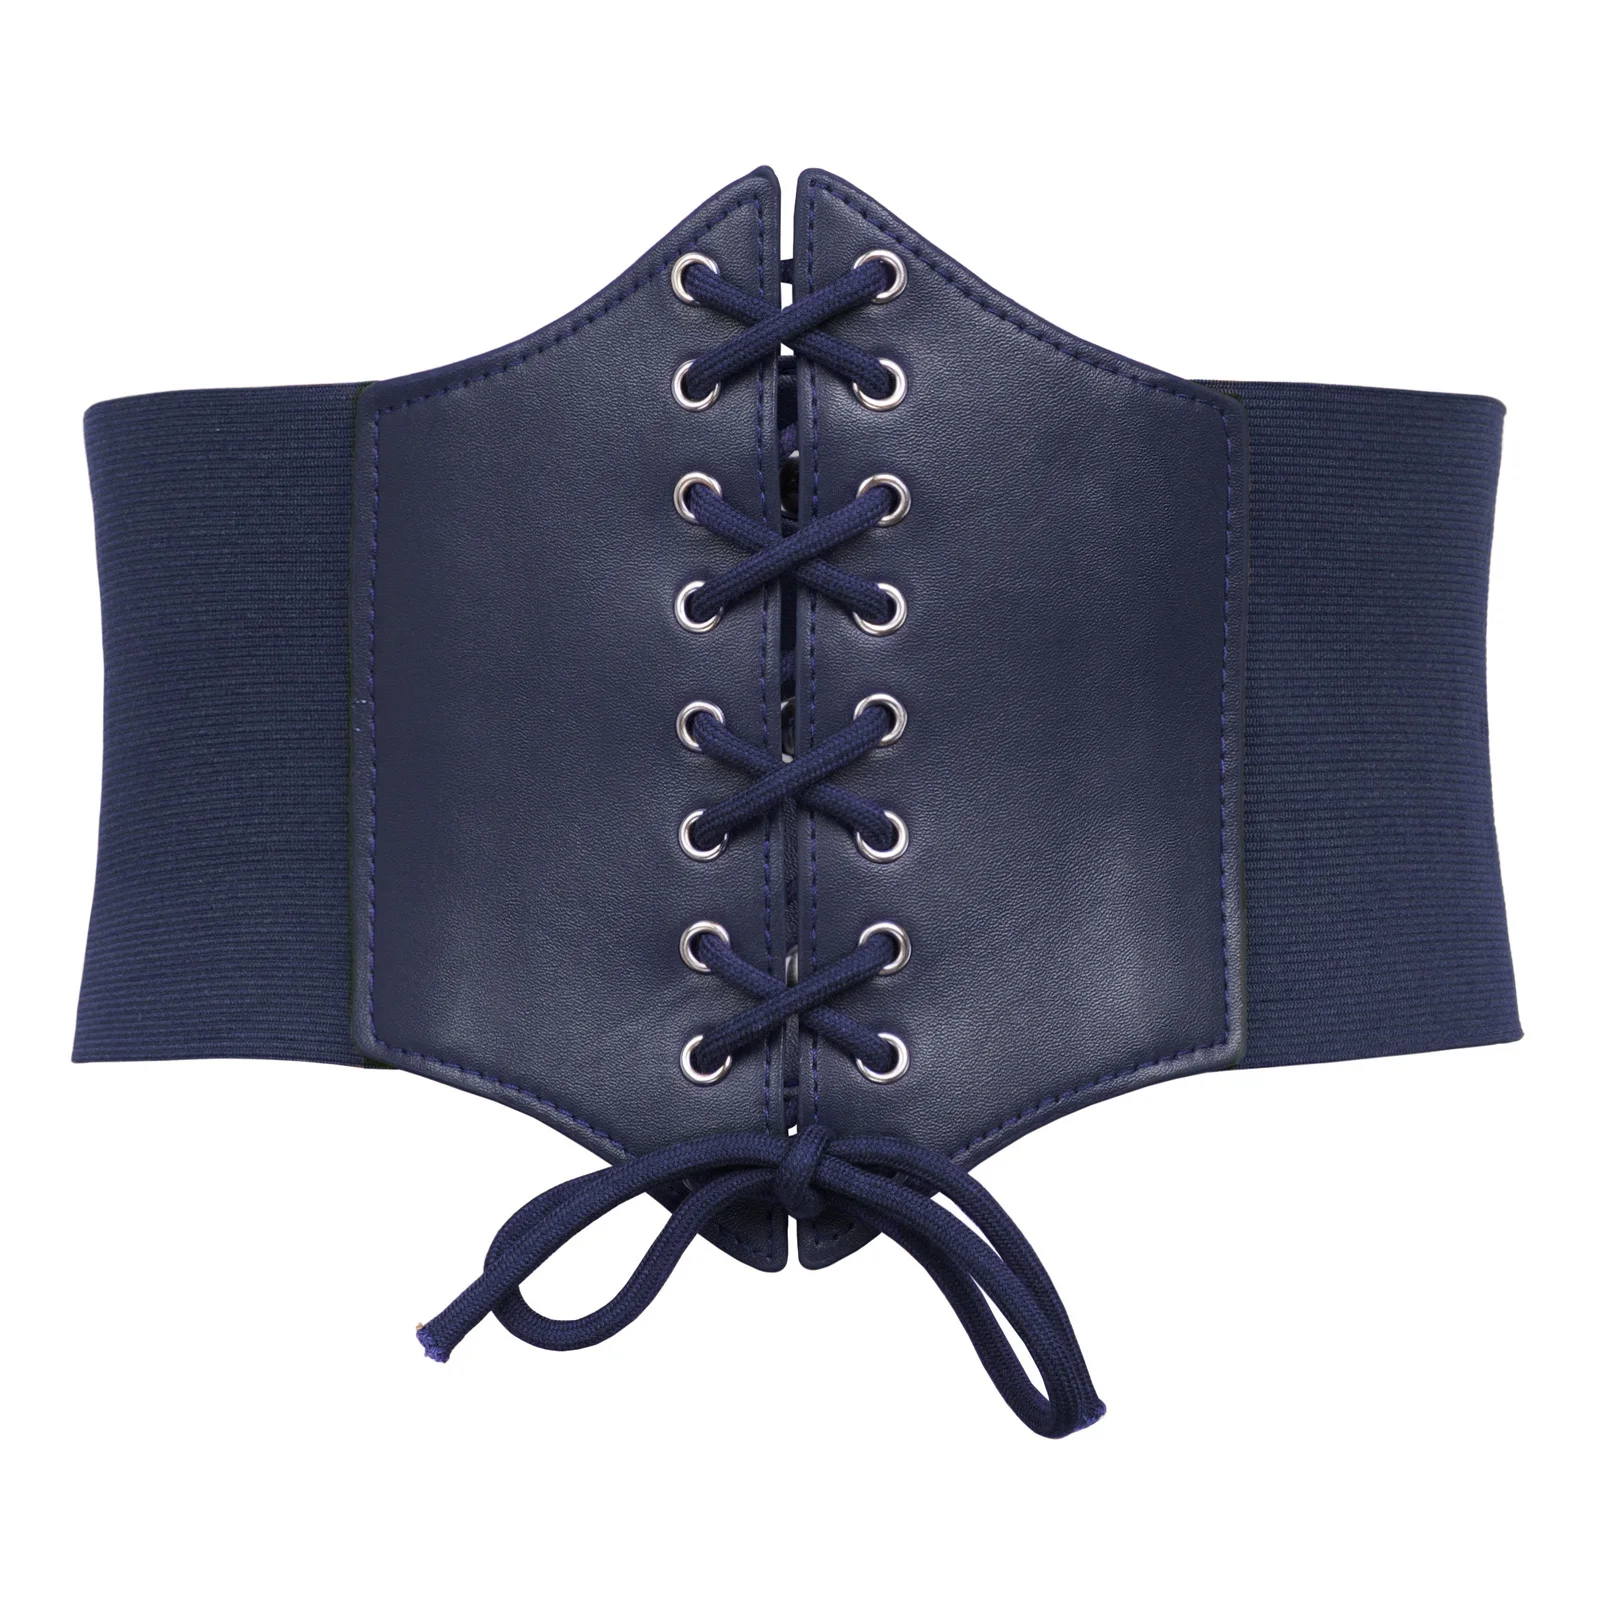 Плюс размер 3XL корсет пояс для женщин 2018 Мода шнуровка PU кожаный роскошный пояс Cinch корсет со стяжками широкий пояс с пряжкой пояс|Женские ремни|   | АлиЭкспресс